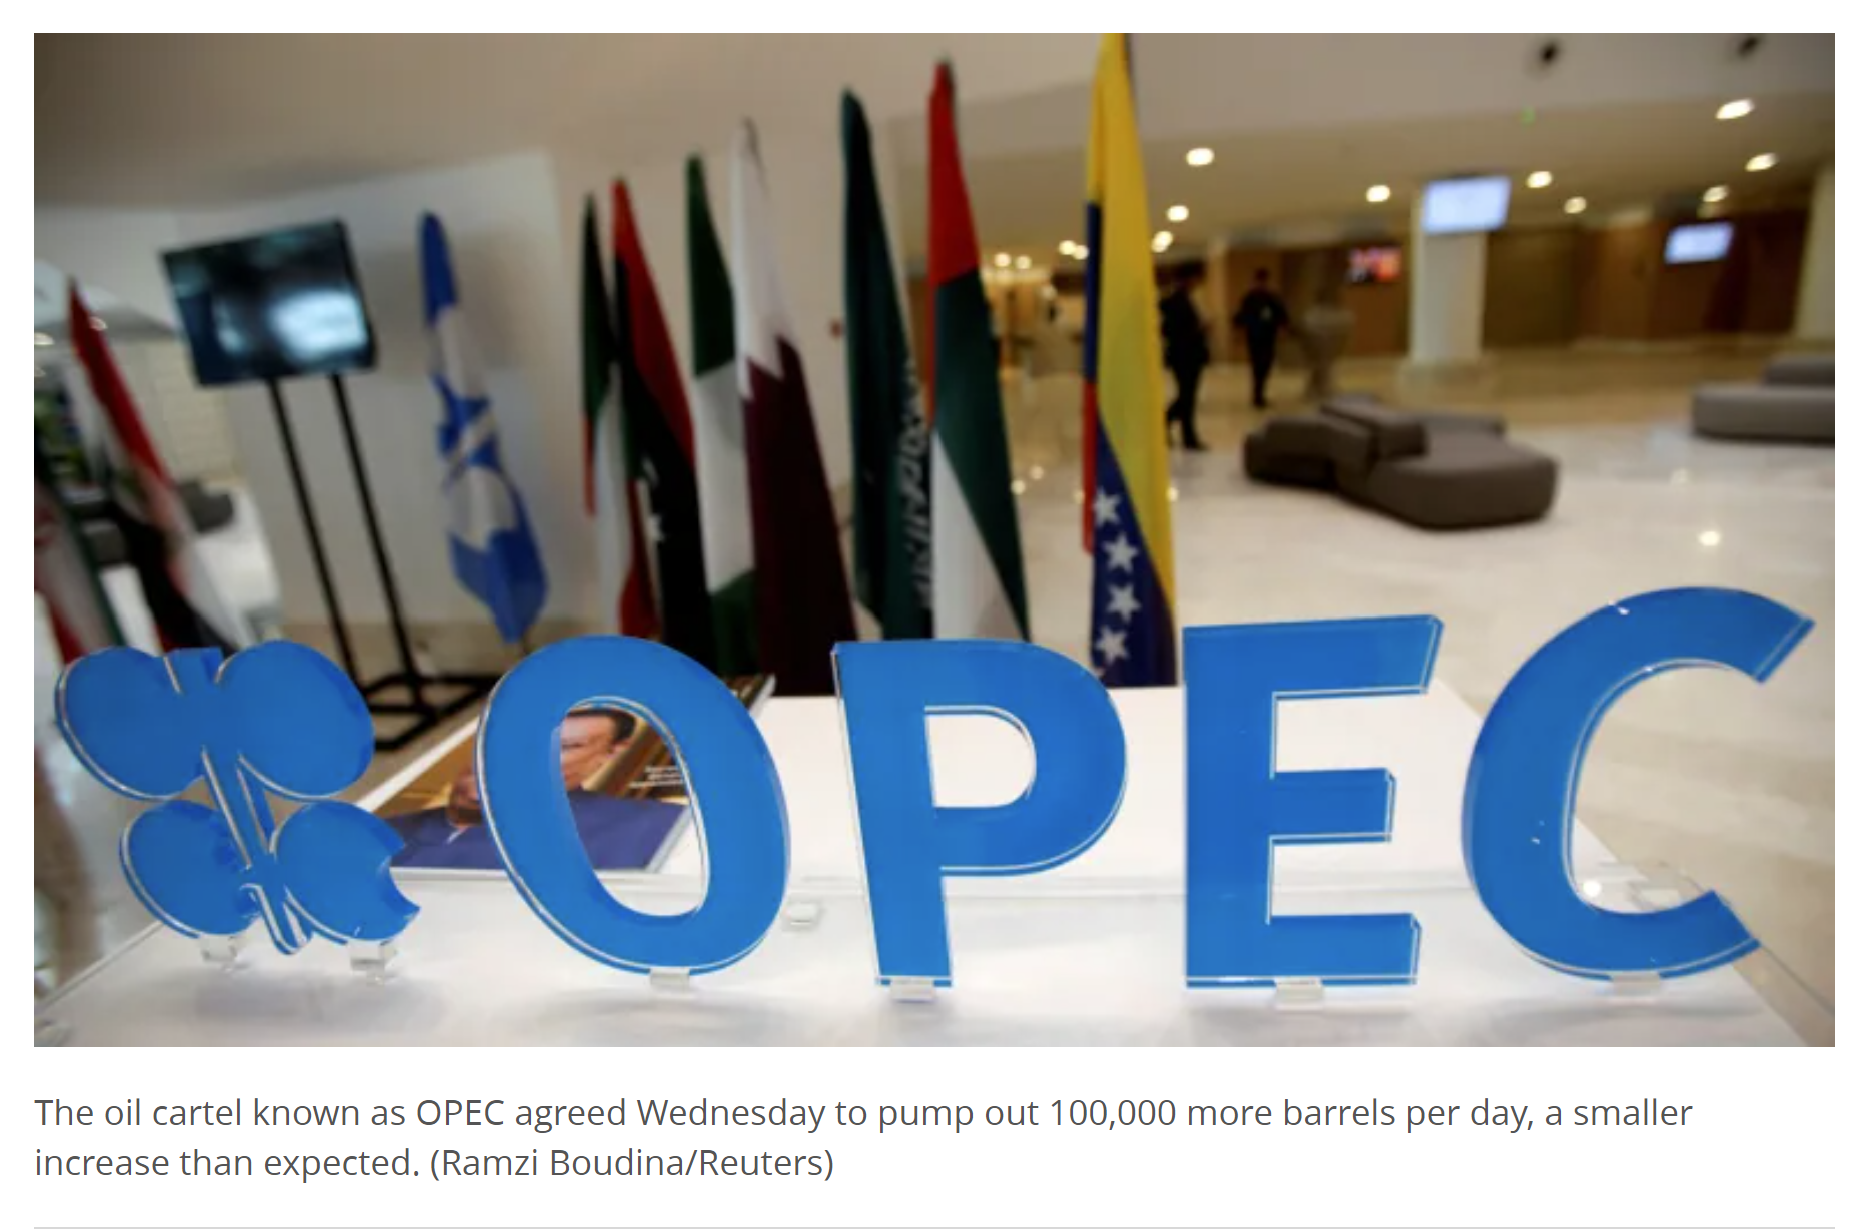 اوپک پلاس با افزایش تولید نفت به میزان 100،000 بشکه در روز موافقت کرد